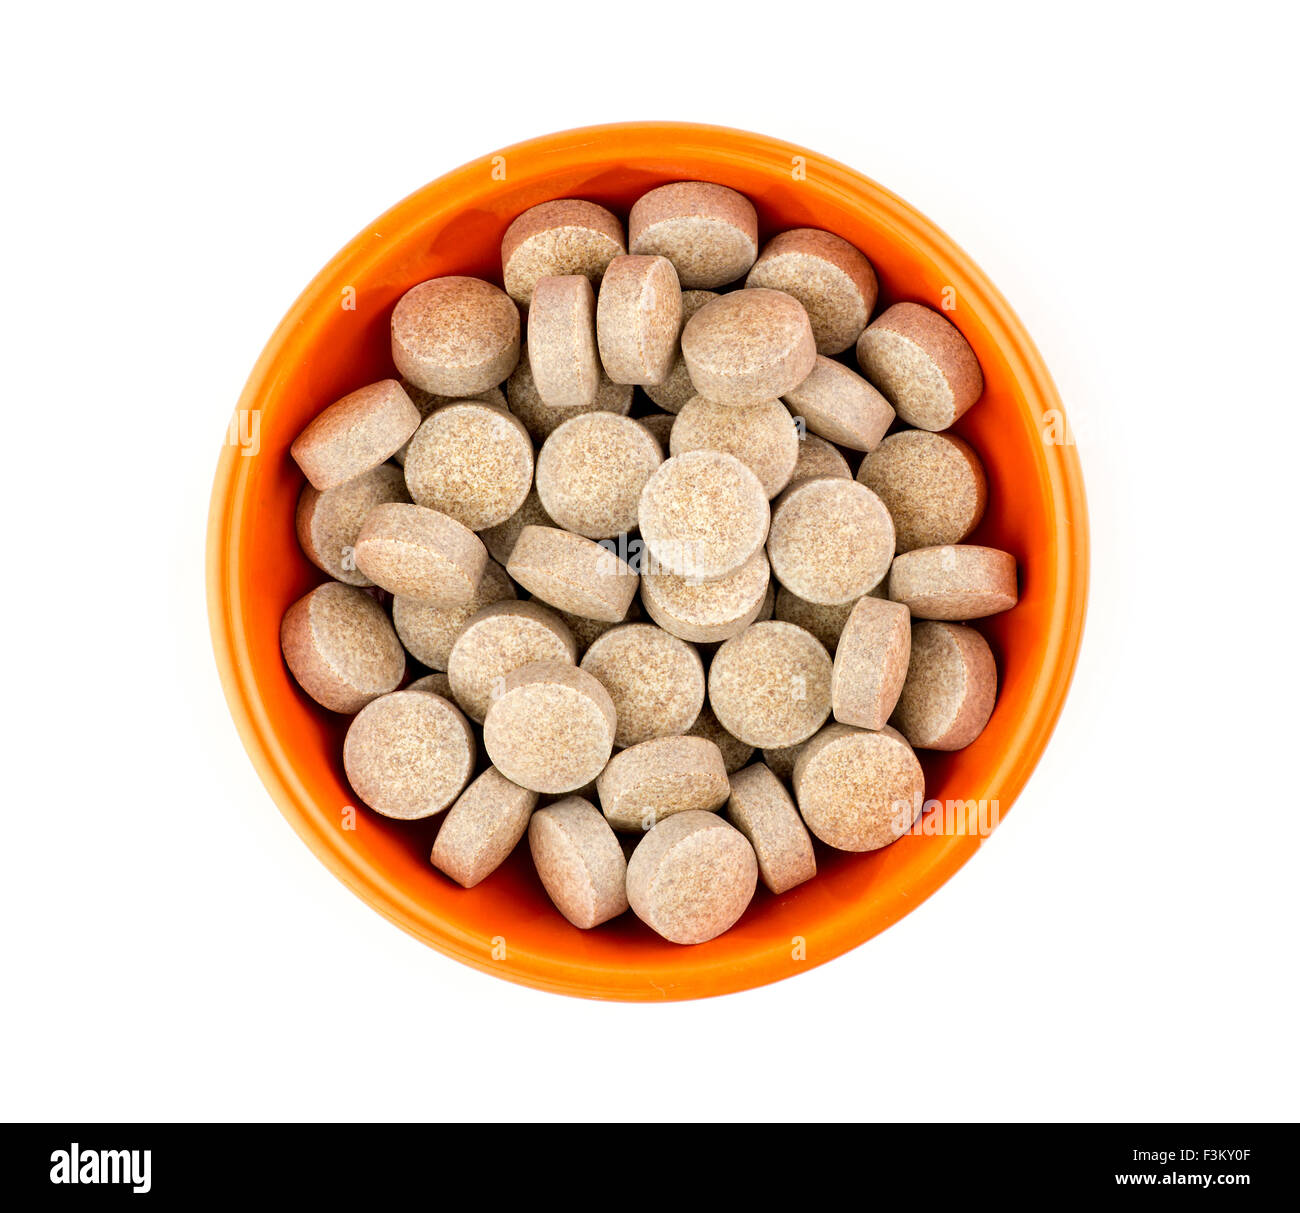 Orange herbal multi-vitamin pill tablets against white Stock Photo